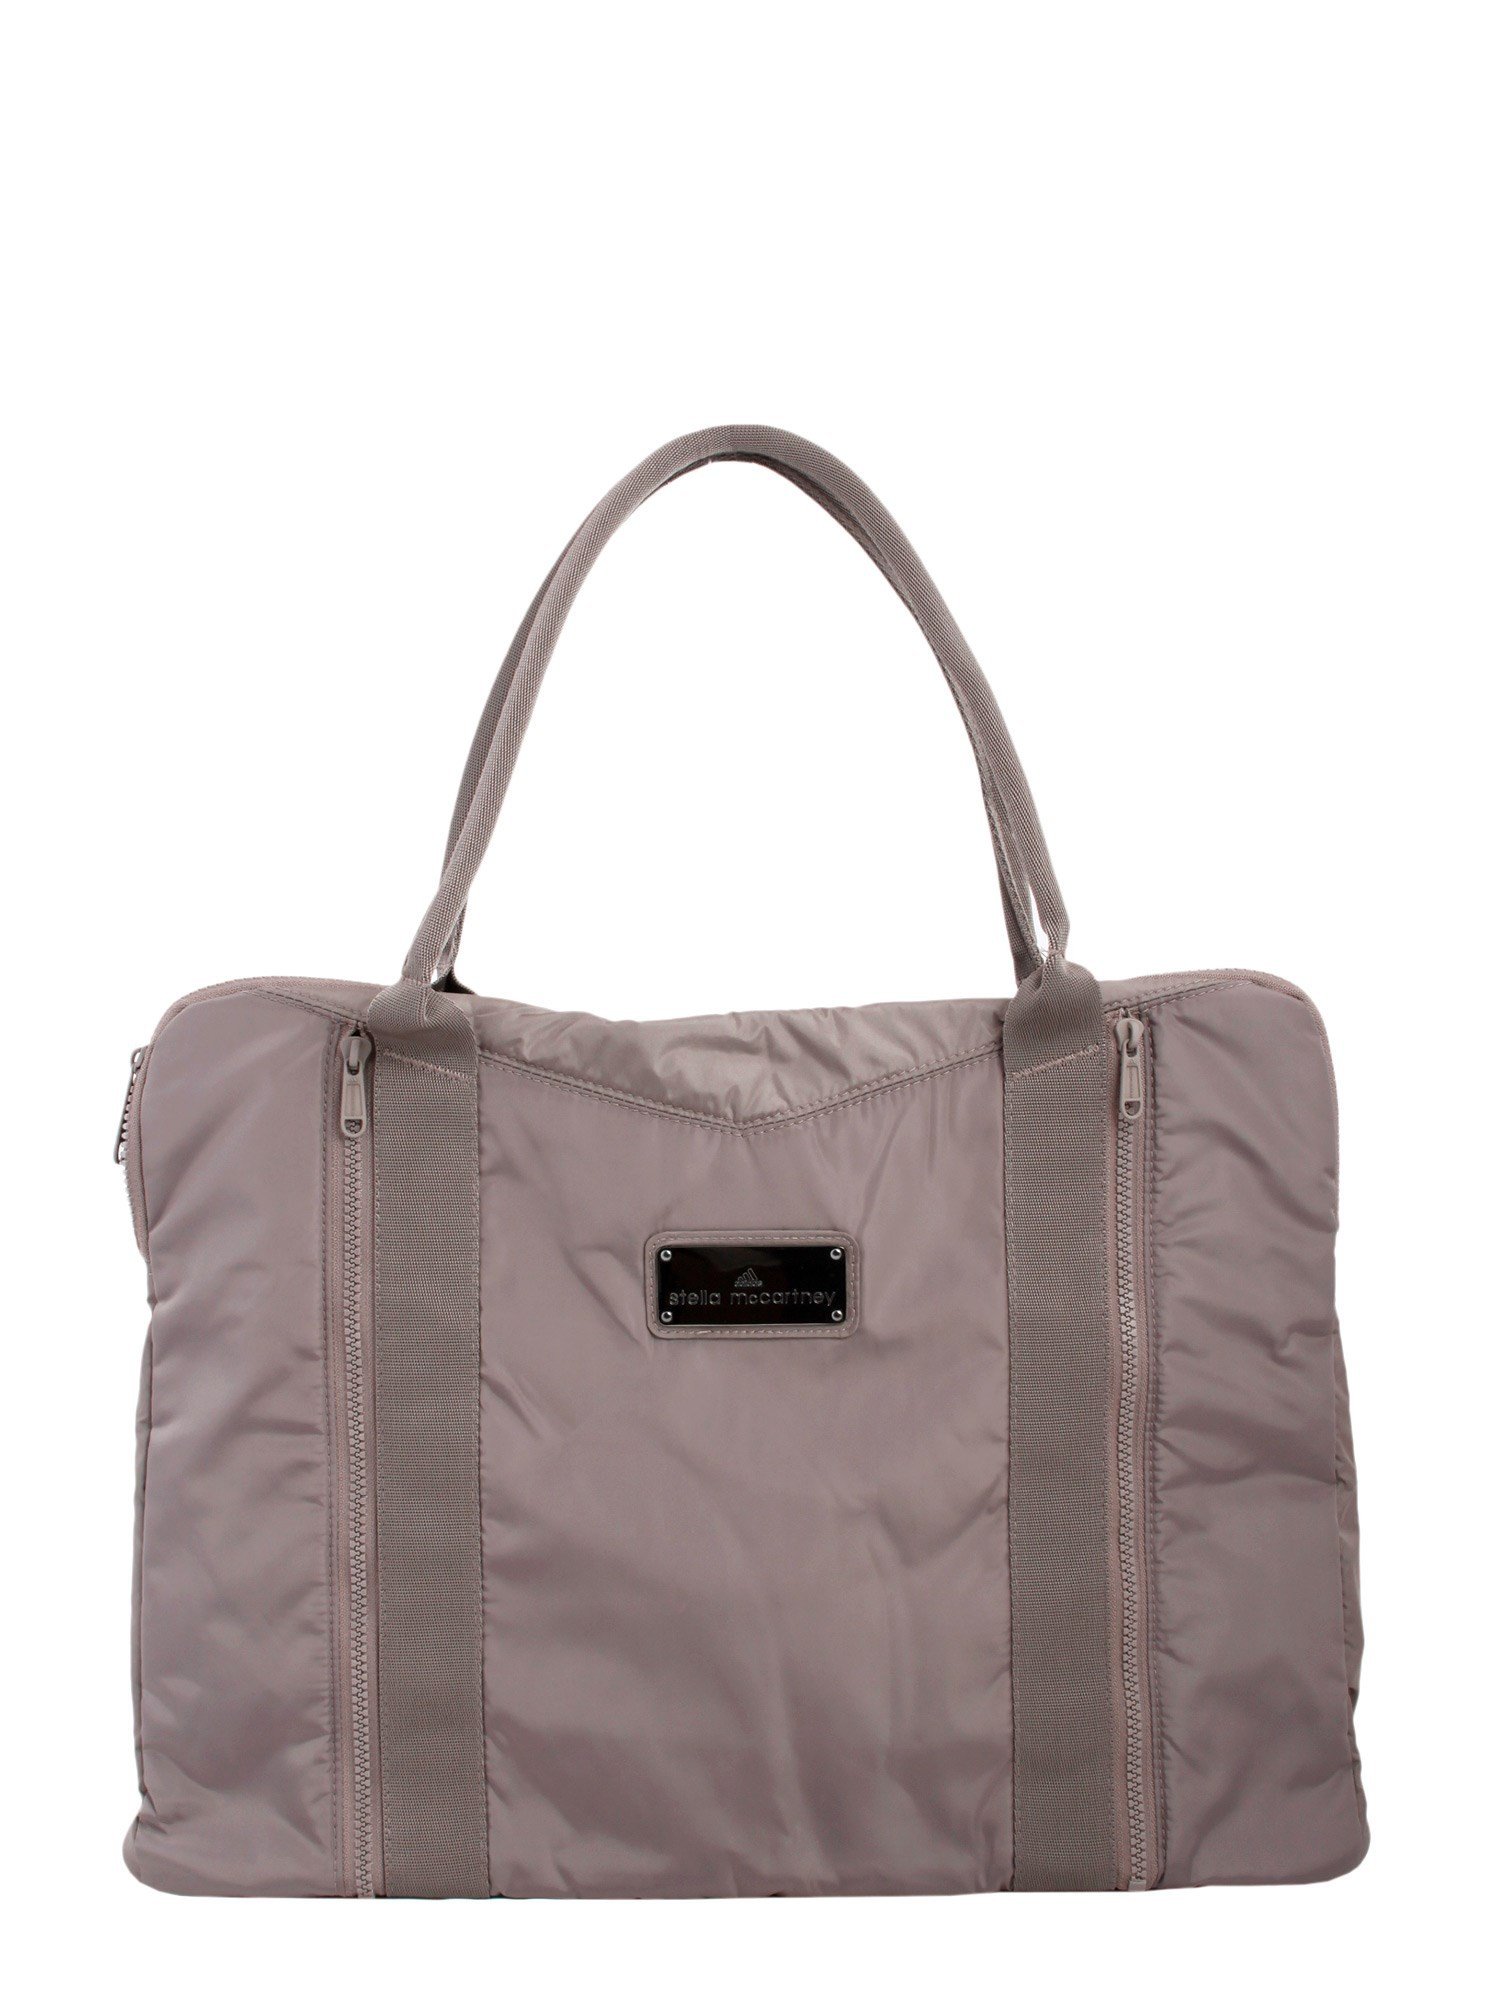 Adidas by stella mccartney Yoga Bag in Gray (Grigio) | Lyst